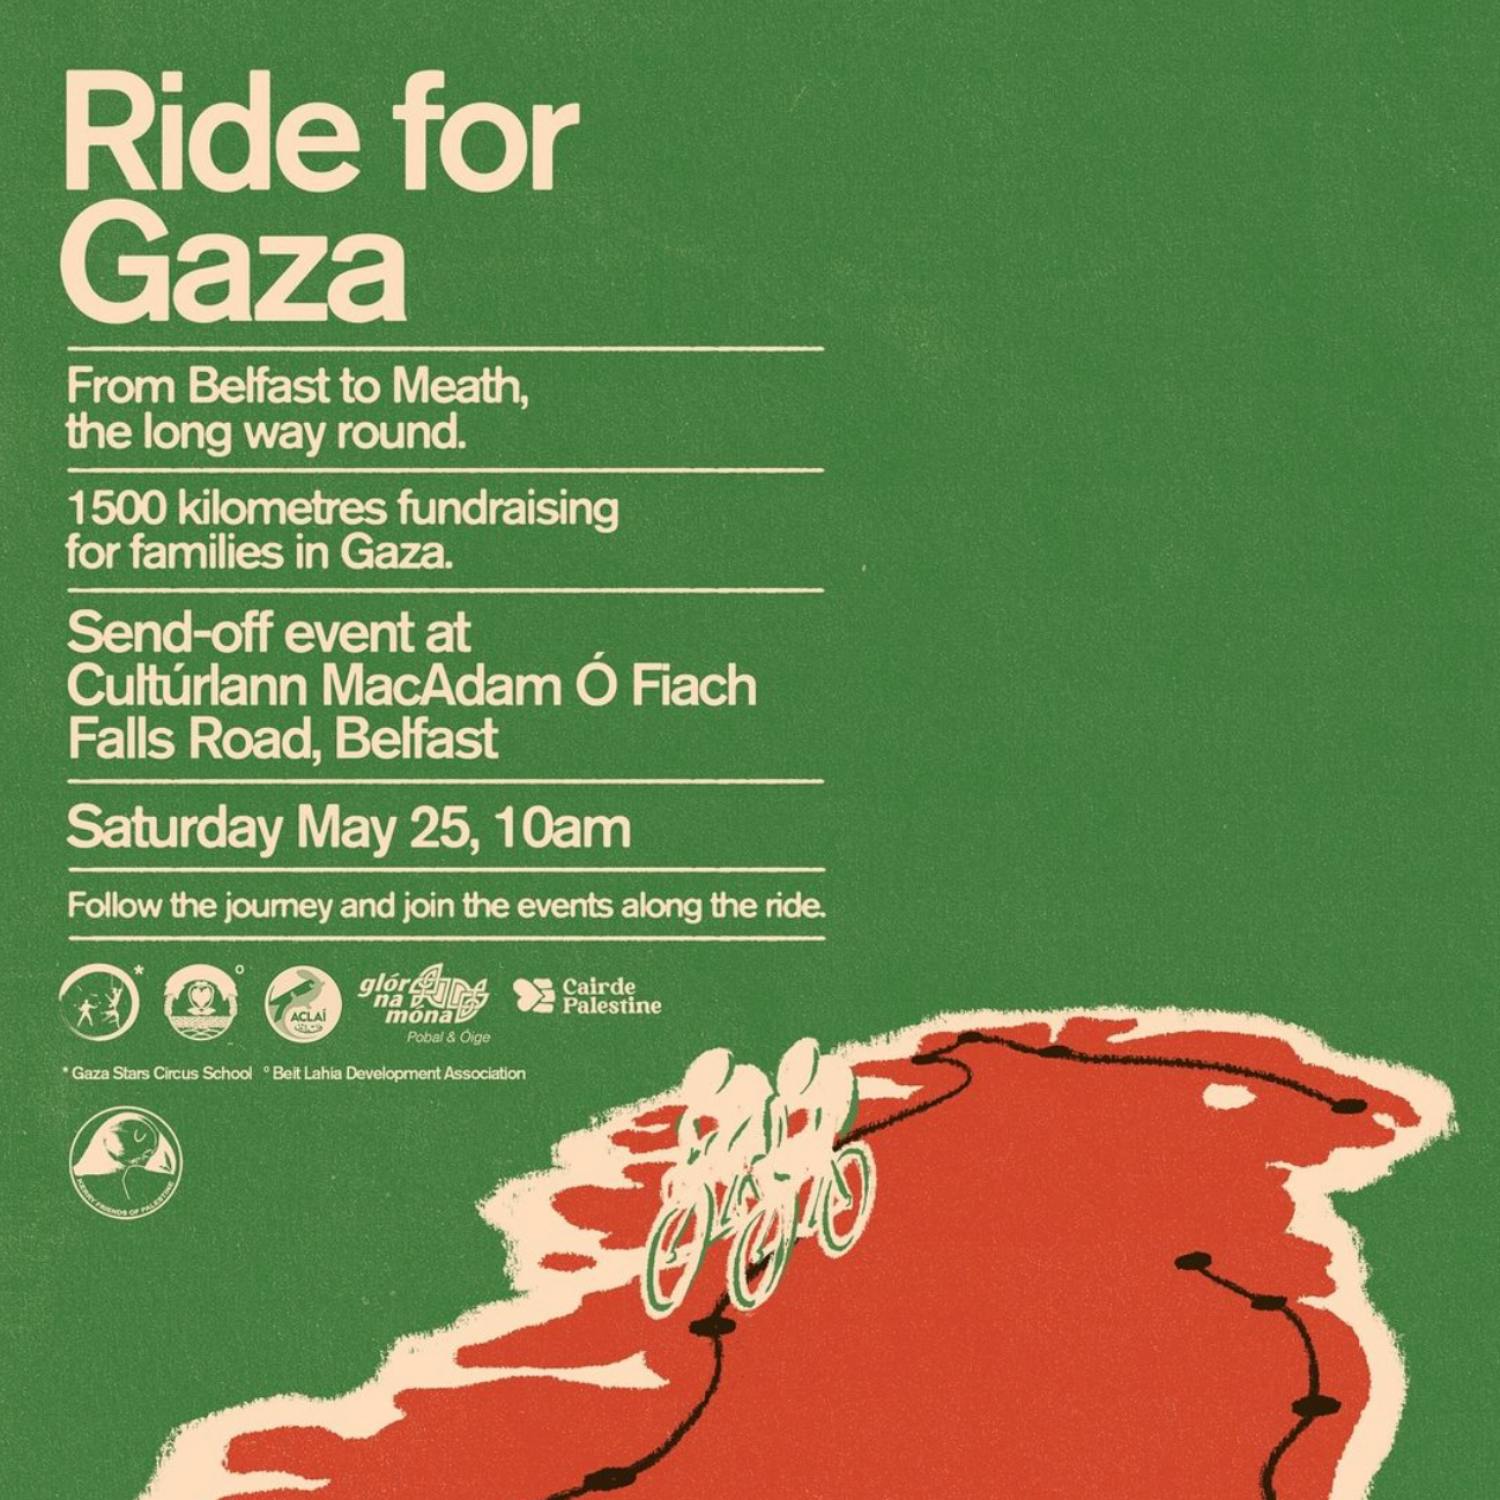 Mínithe: Ainle ón mbóthar i mbun Ride for Gaza